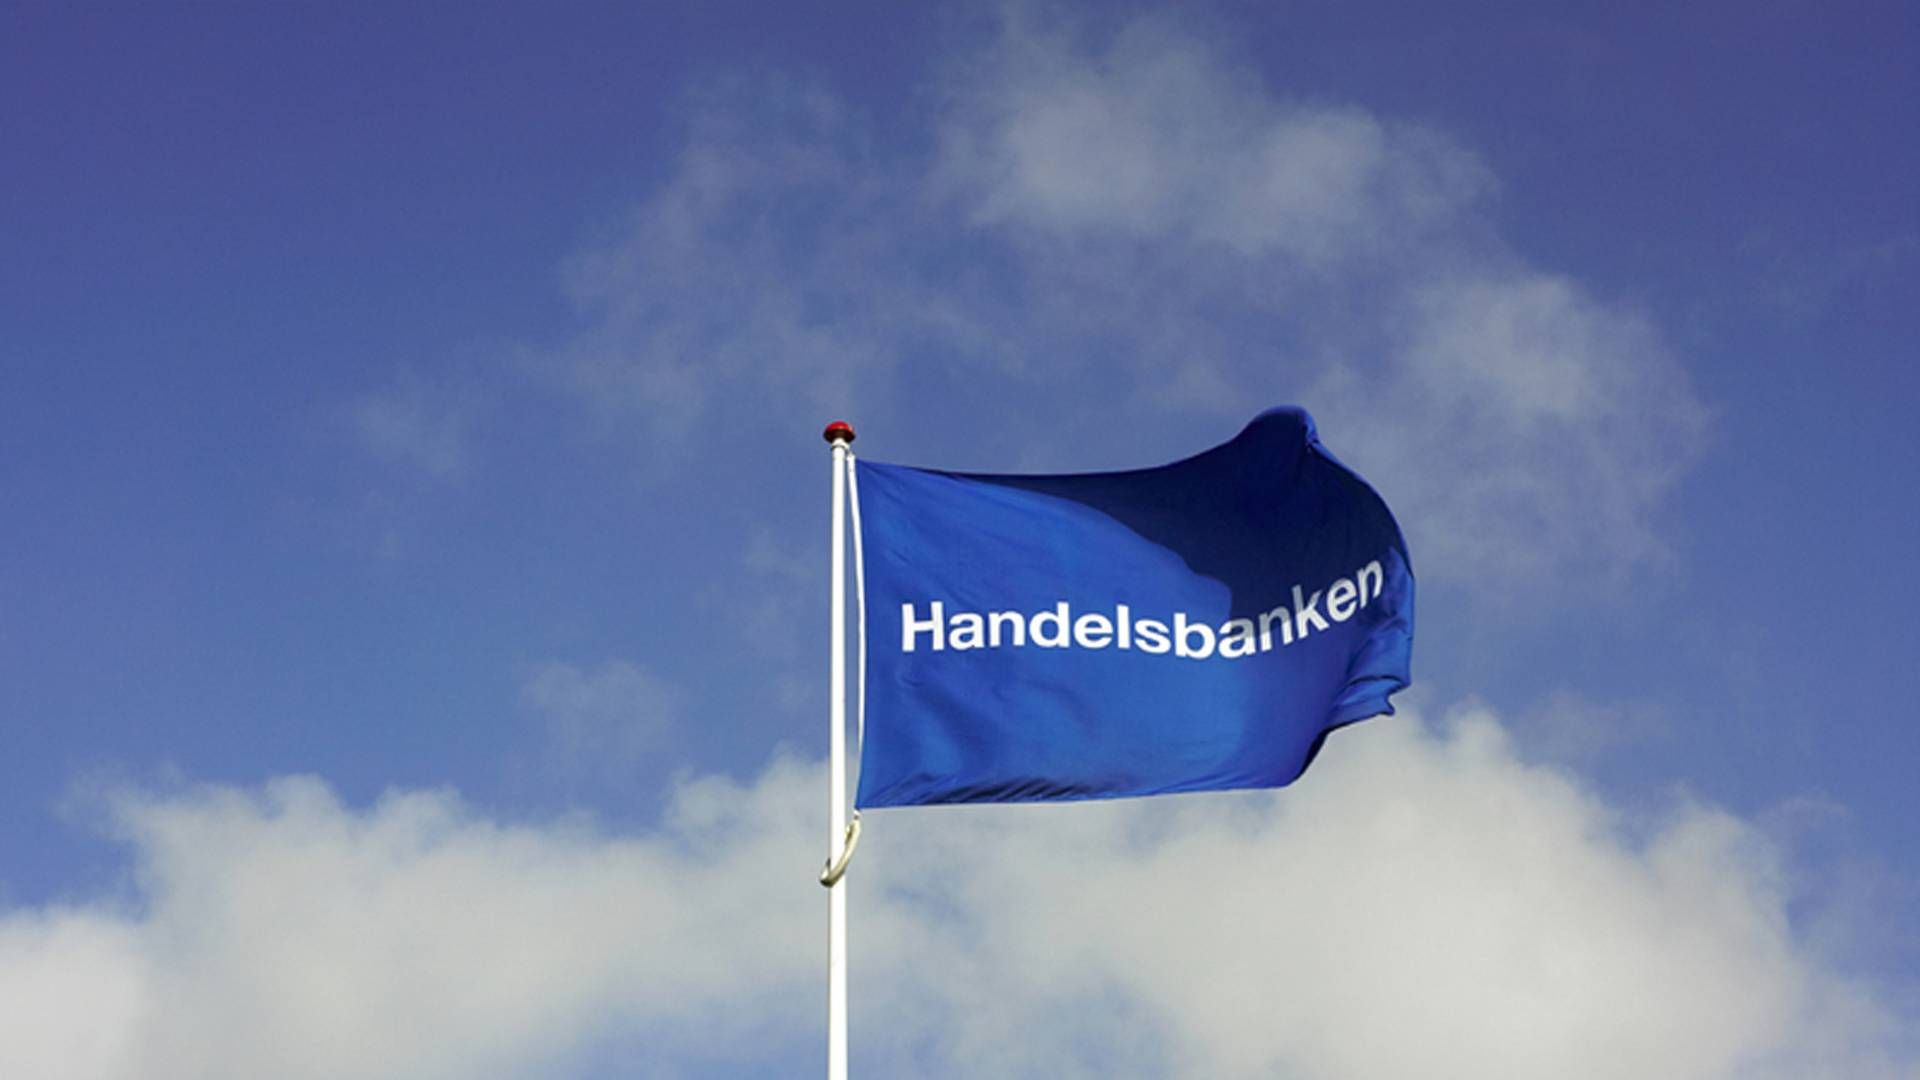 Handelsbanken beholder sin posisjon i det svenske markedet. | Foto: PR/Handelsbanken